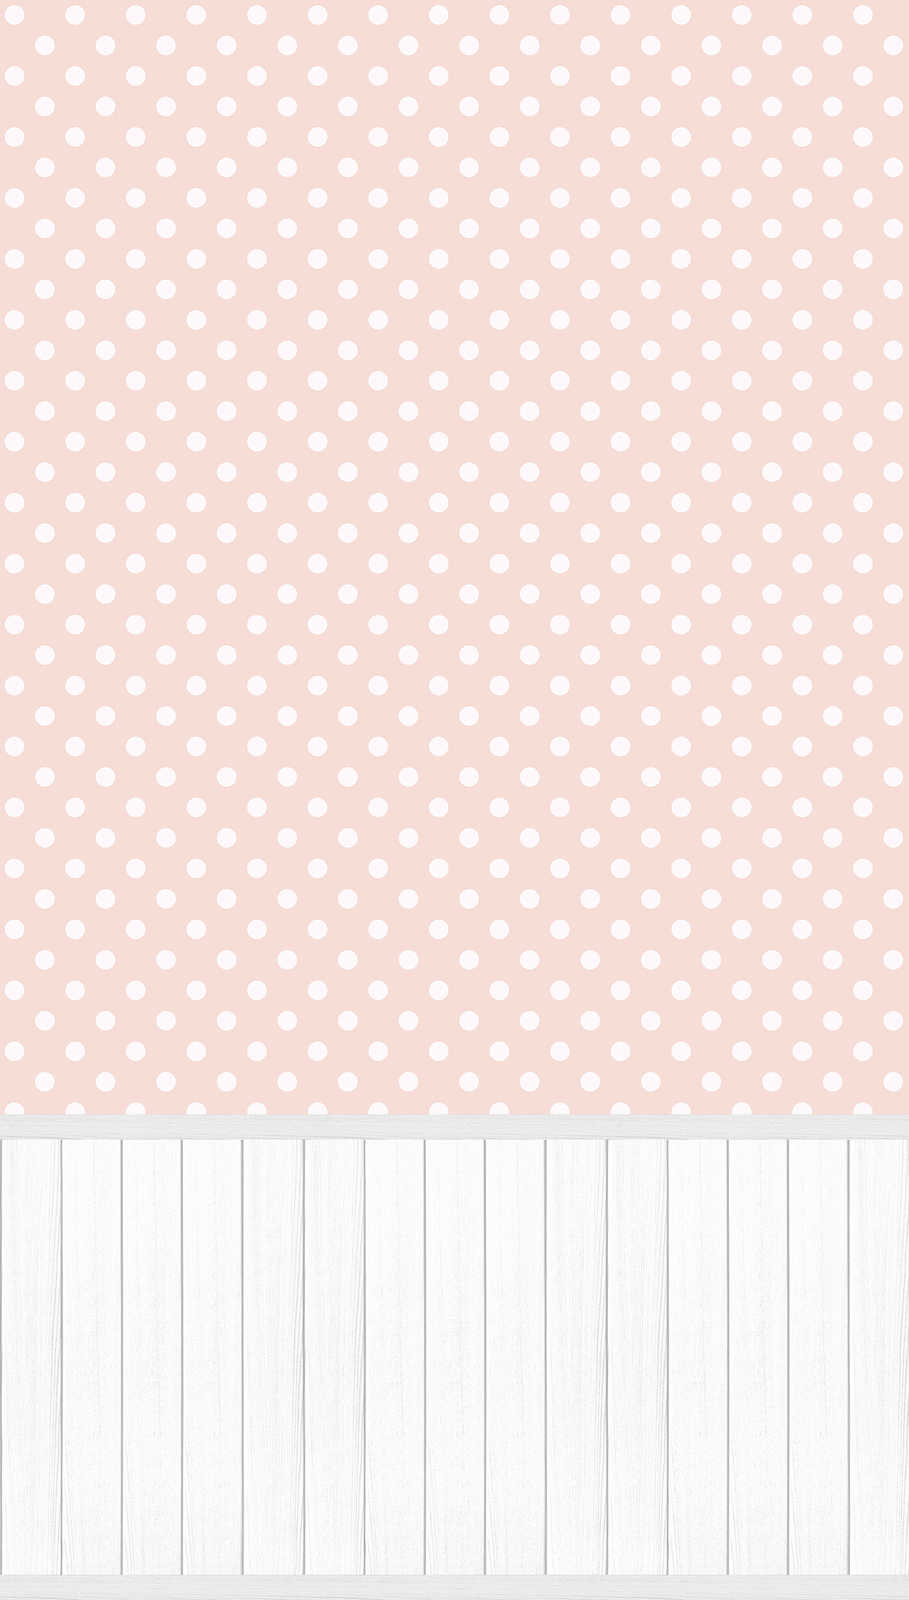             Vlies-Motivtapete mit Holz-Optik-Sockelborte und Punkte-Muster – Weiß, Grau, Rosa
        